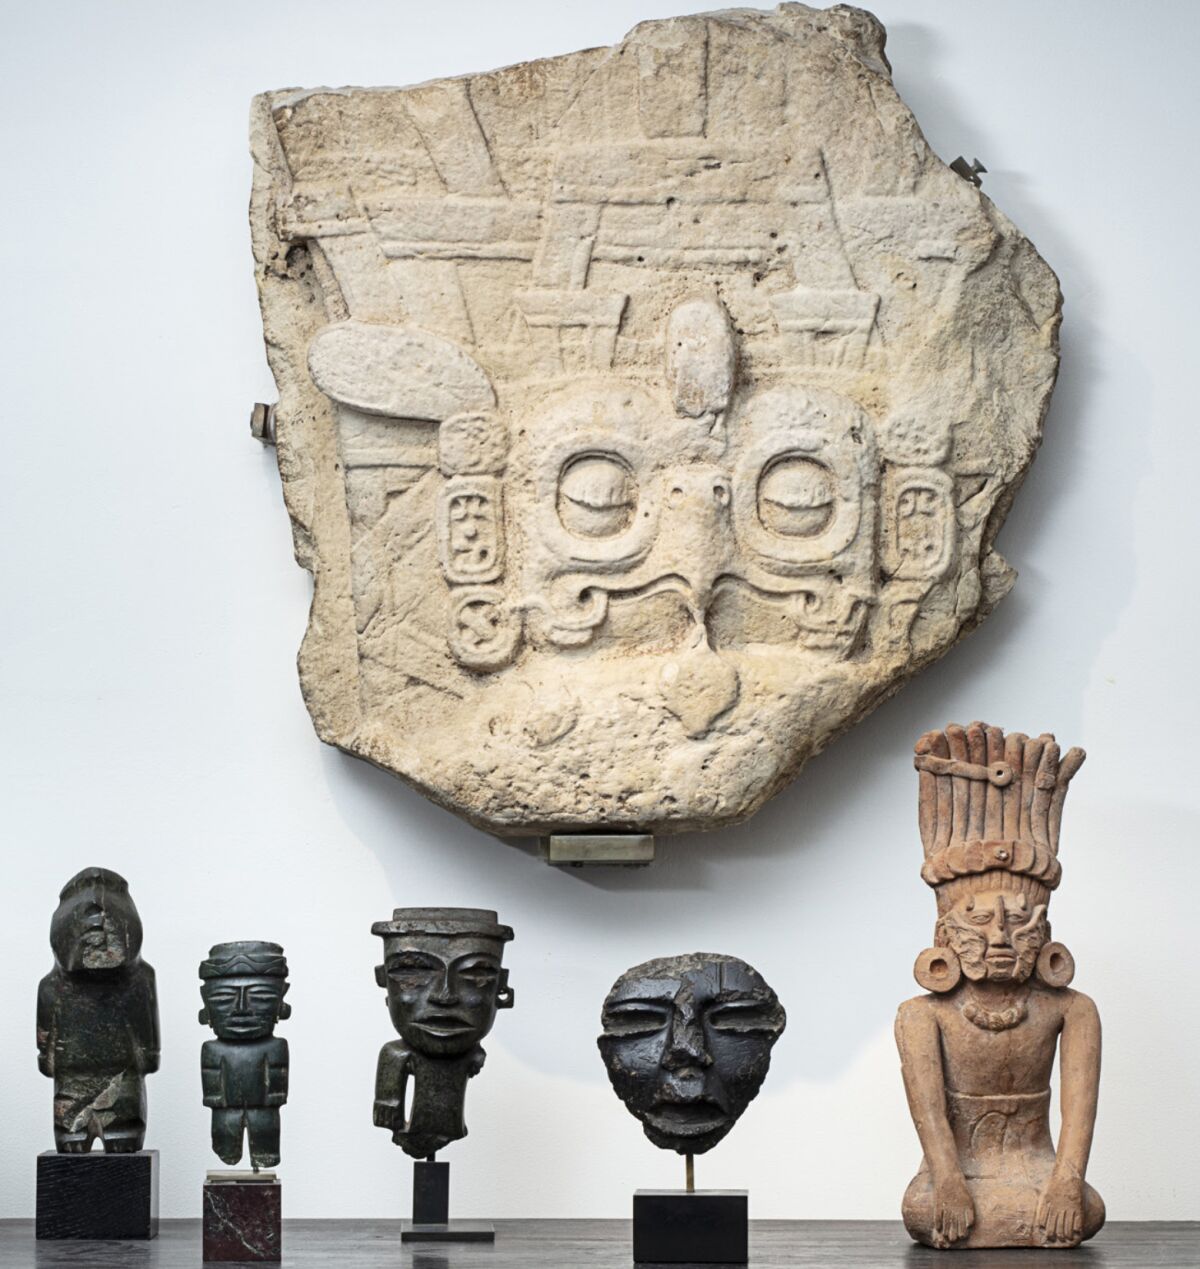 Maya sculpture of owl headdress from Piedras Negras